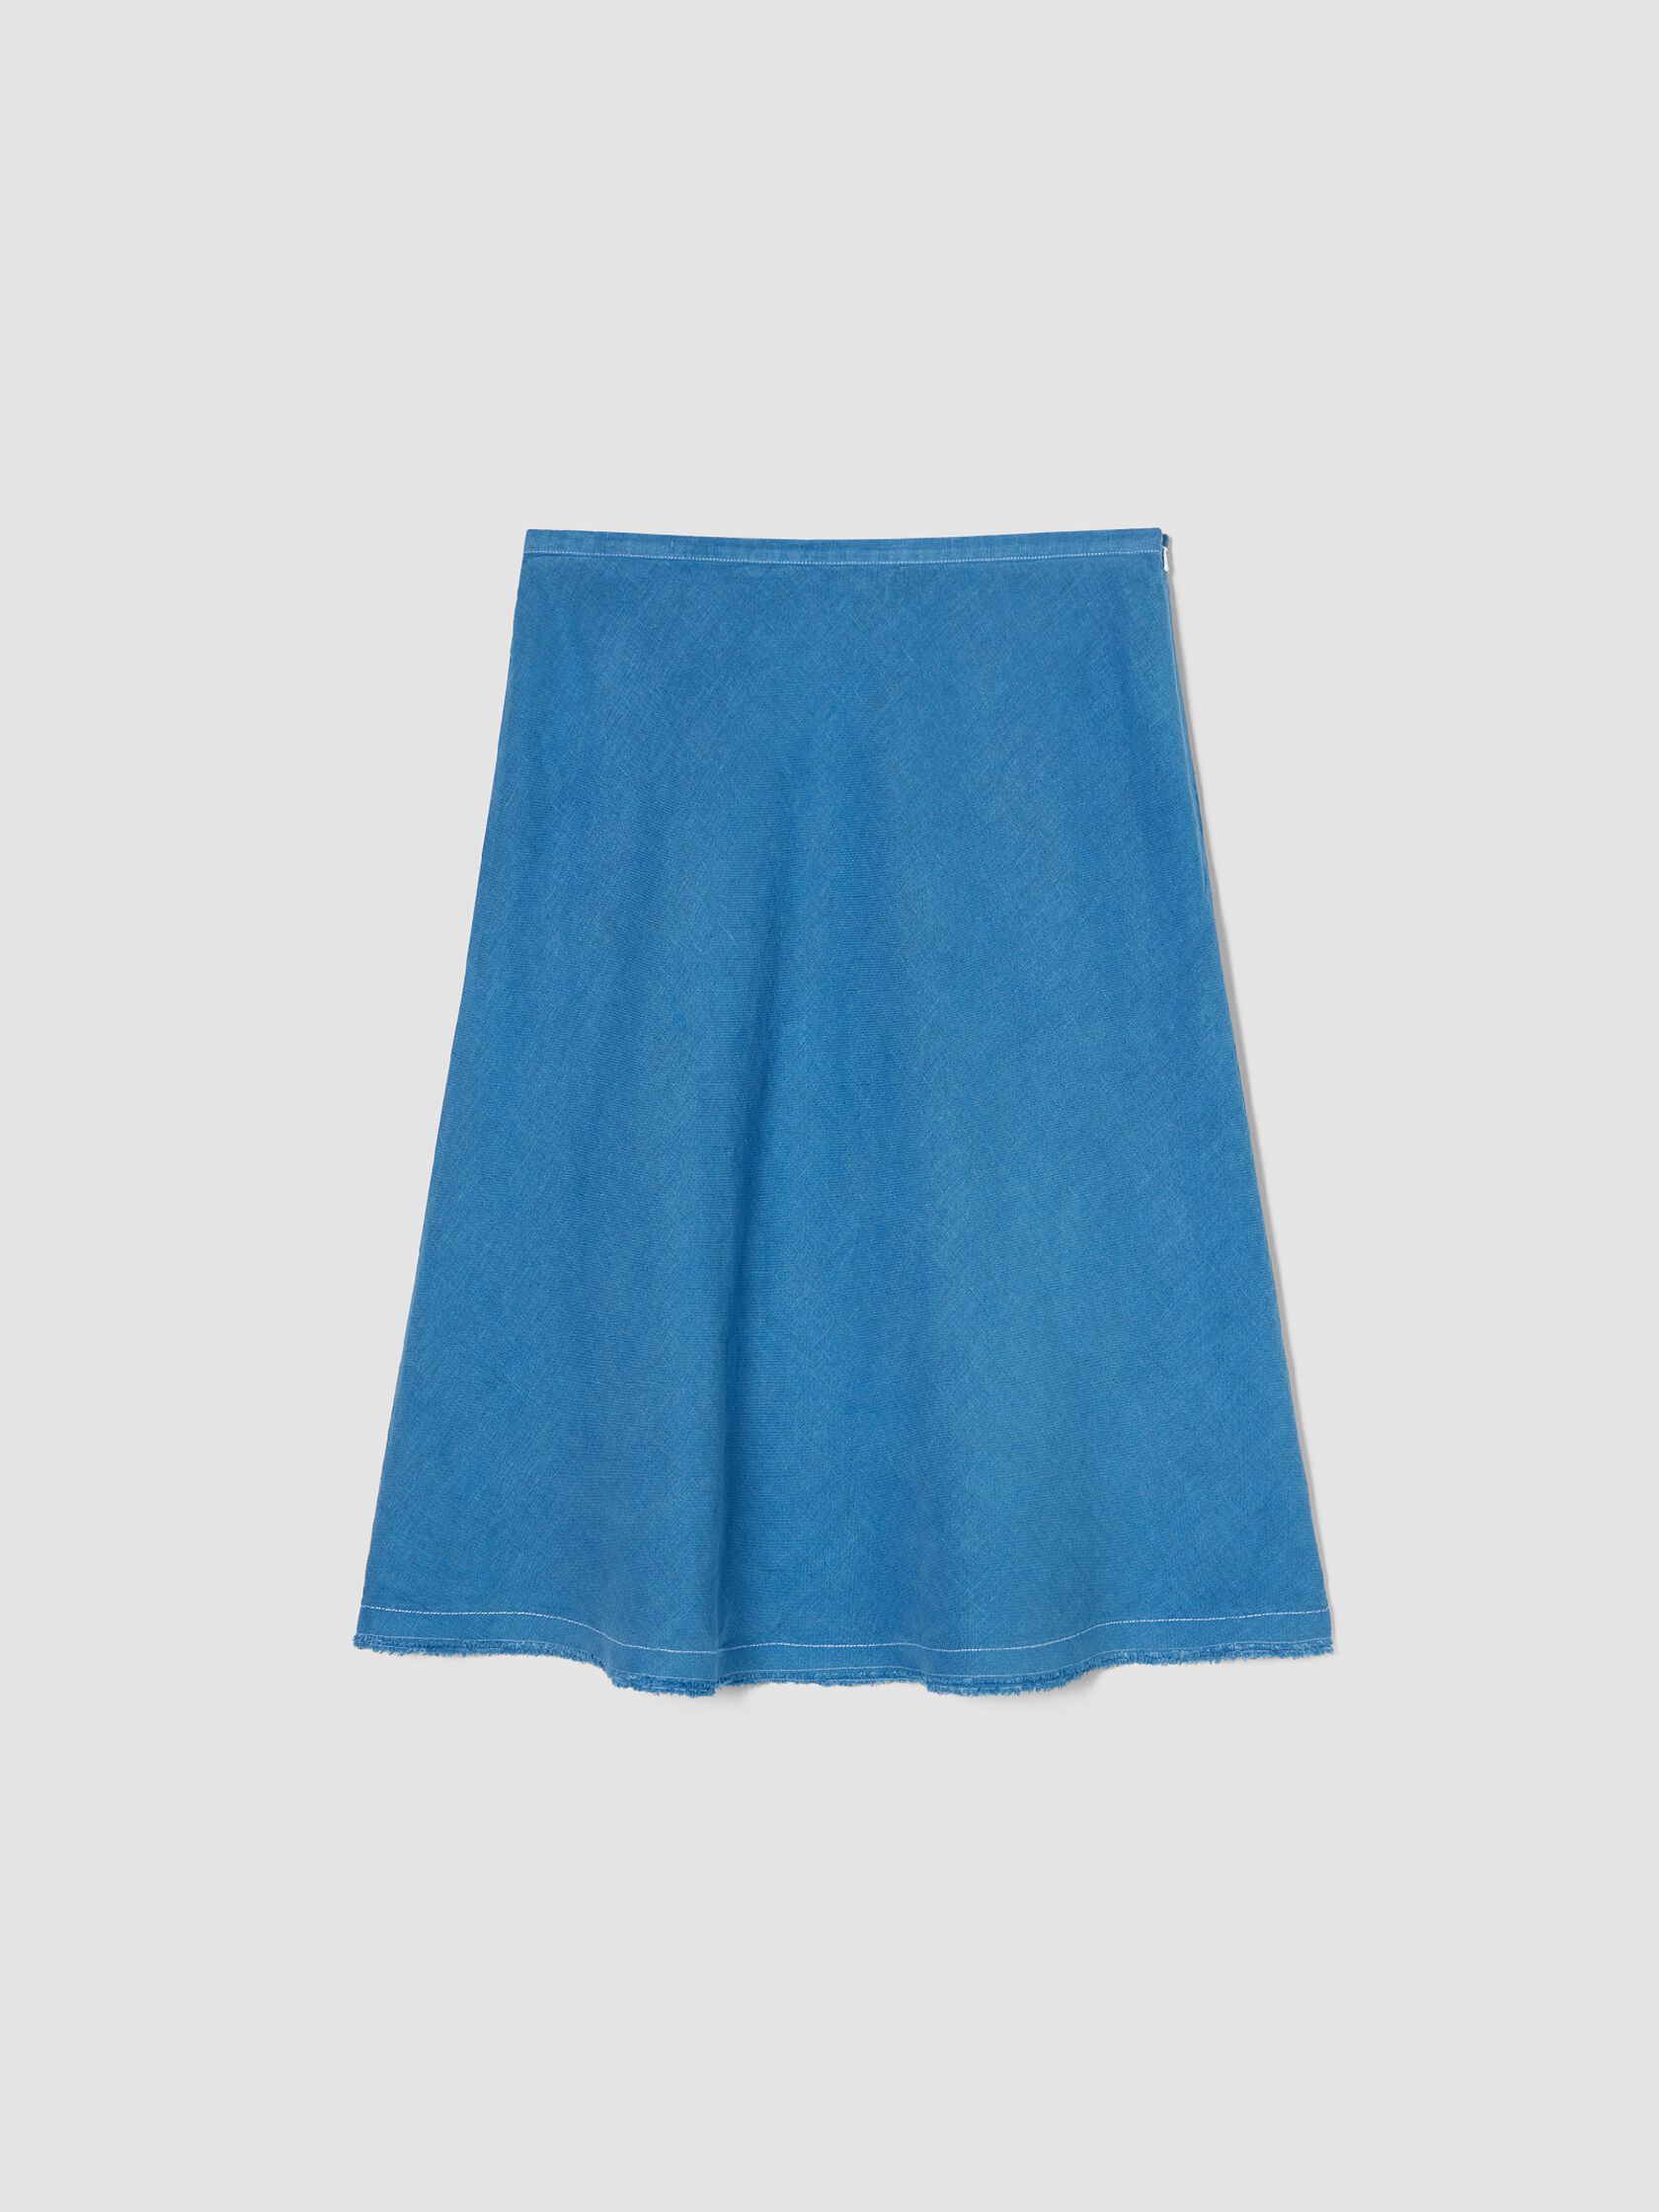 Renew Linen Bias Side-Zip Skirt, M